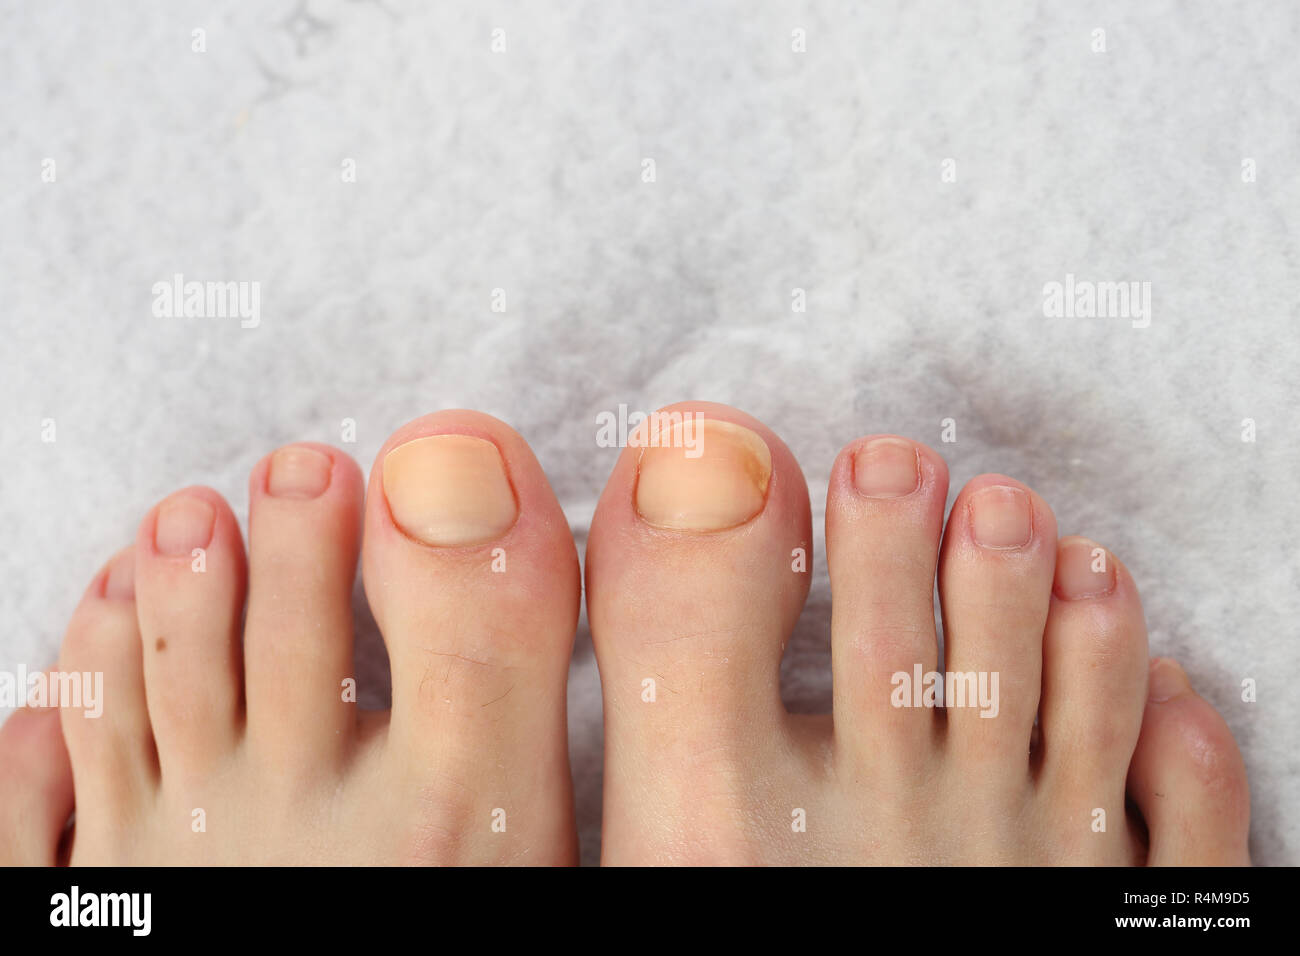 Schöne Füße Pediküre. hygiene der Fingernägel zu Füßen. nagelpflege an den  Füßen Stockfotografie - Alamy